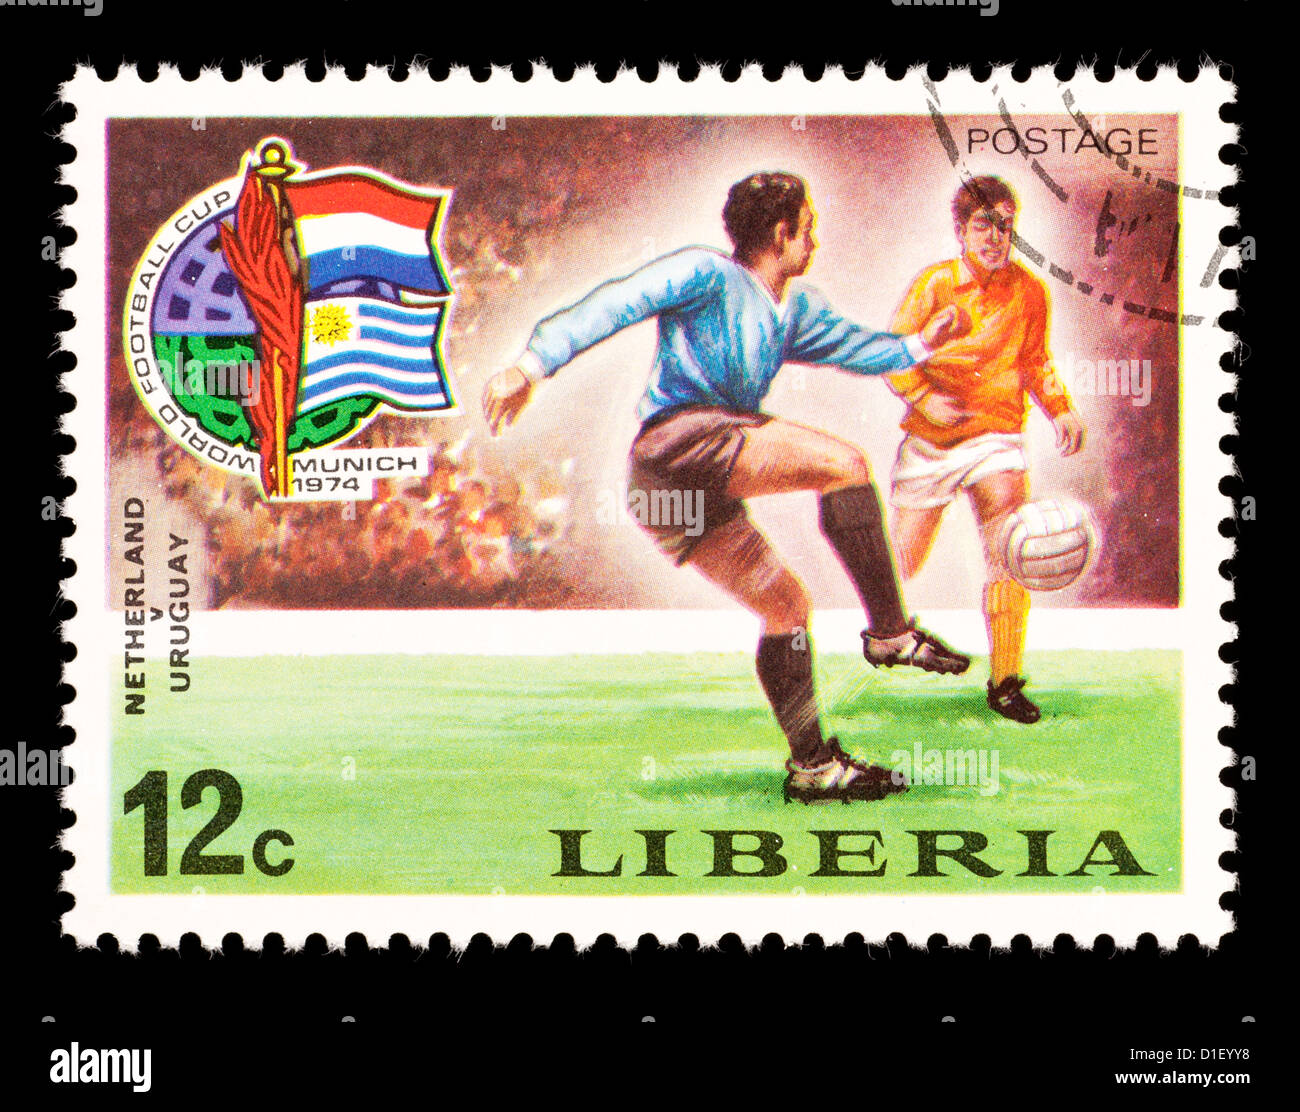 Timbre-poste du Libéria représentant des joueurs de football, émis pour la Coupe du Monde de Soccer de 1974 à Munich. Banque D'Images